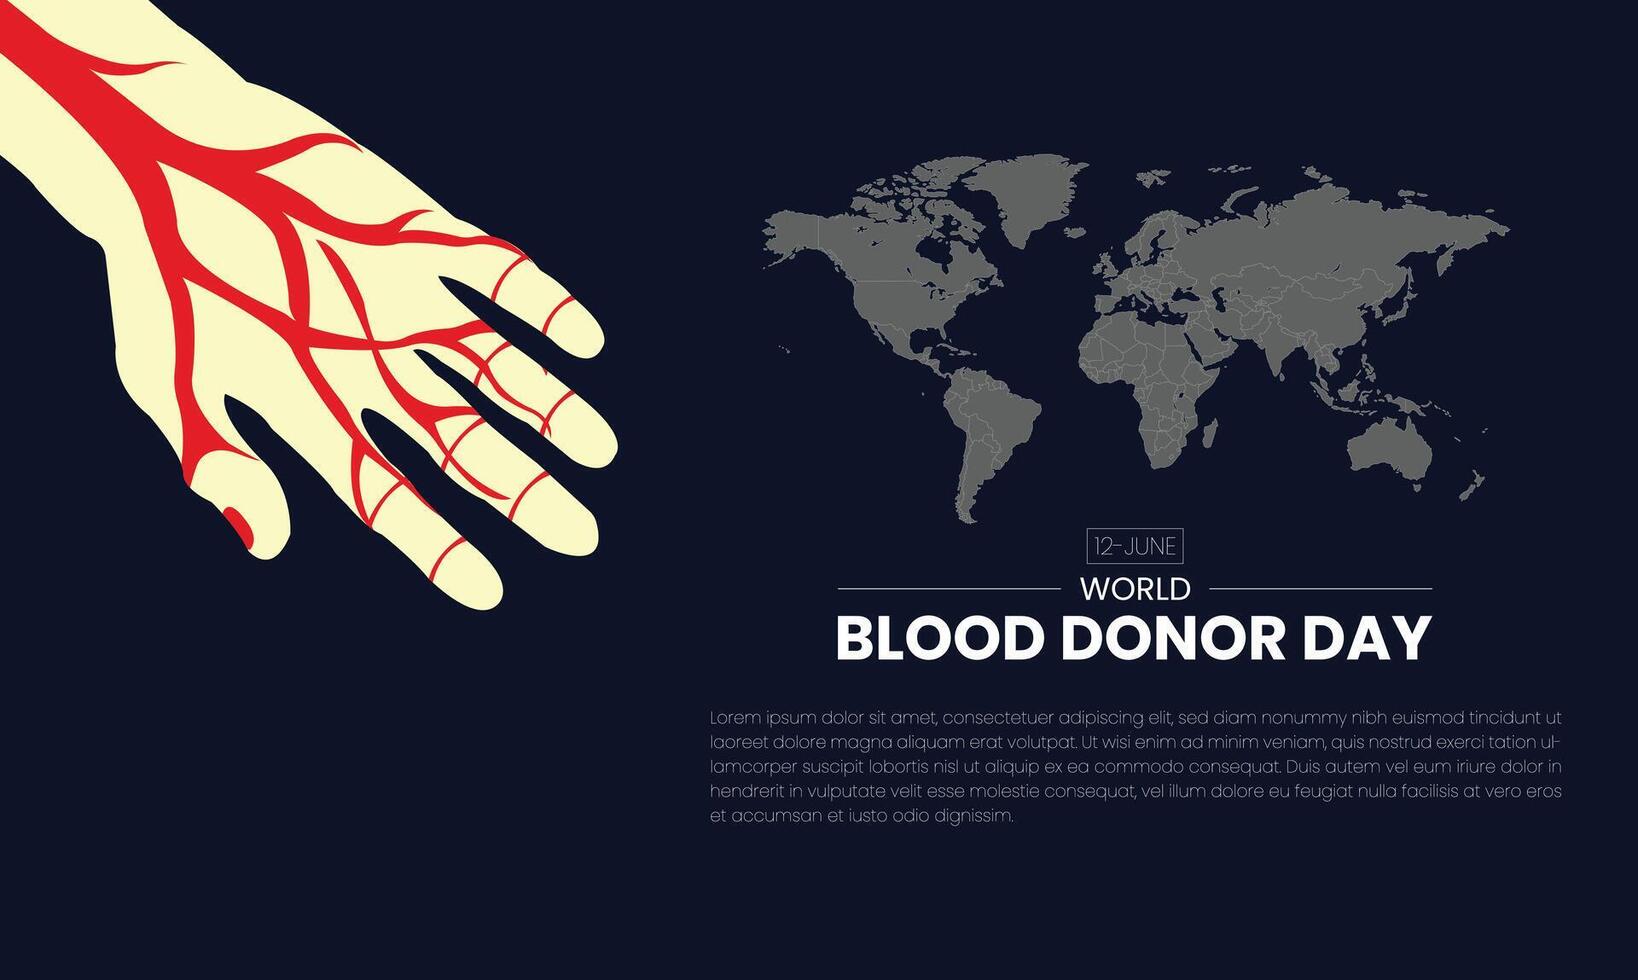 mundo sangue doador dia fundo com sangue derrubar. 14 junho. vetor